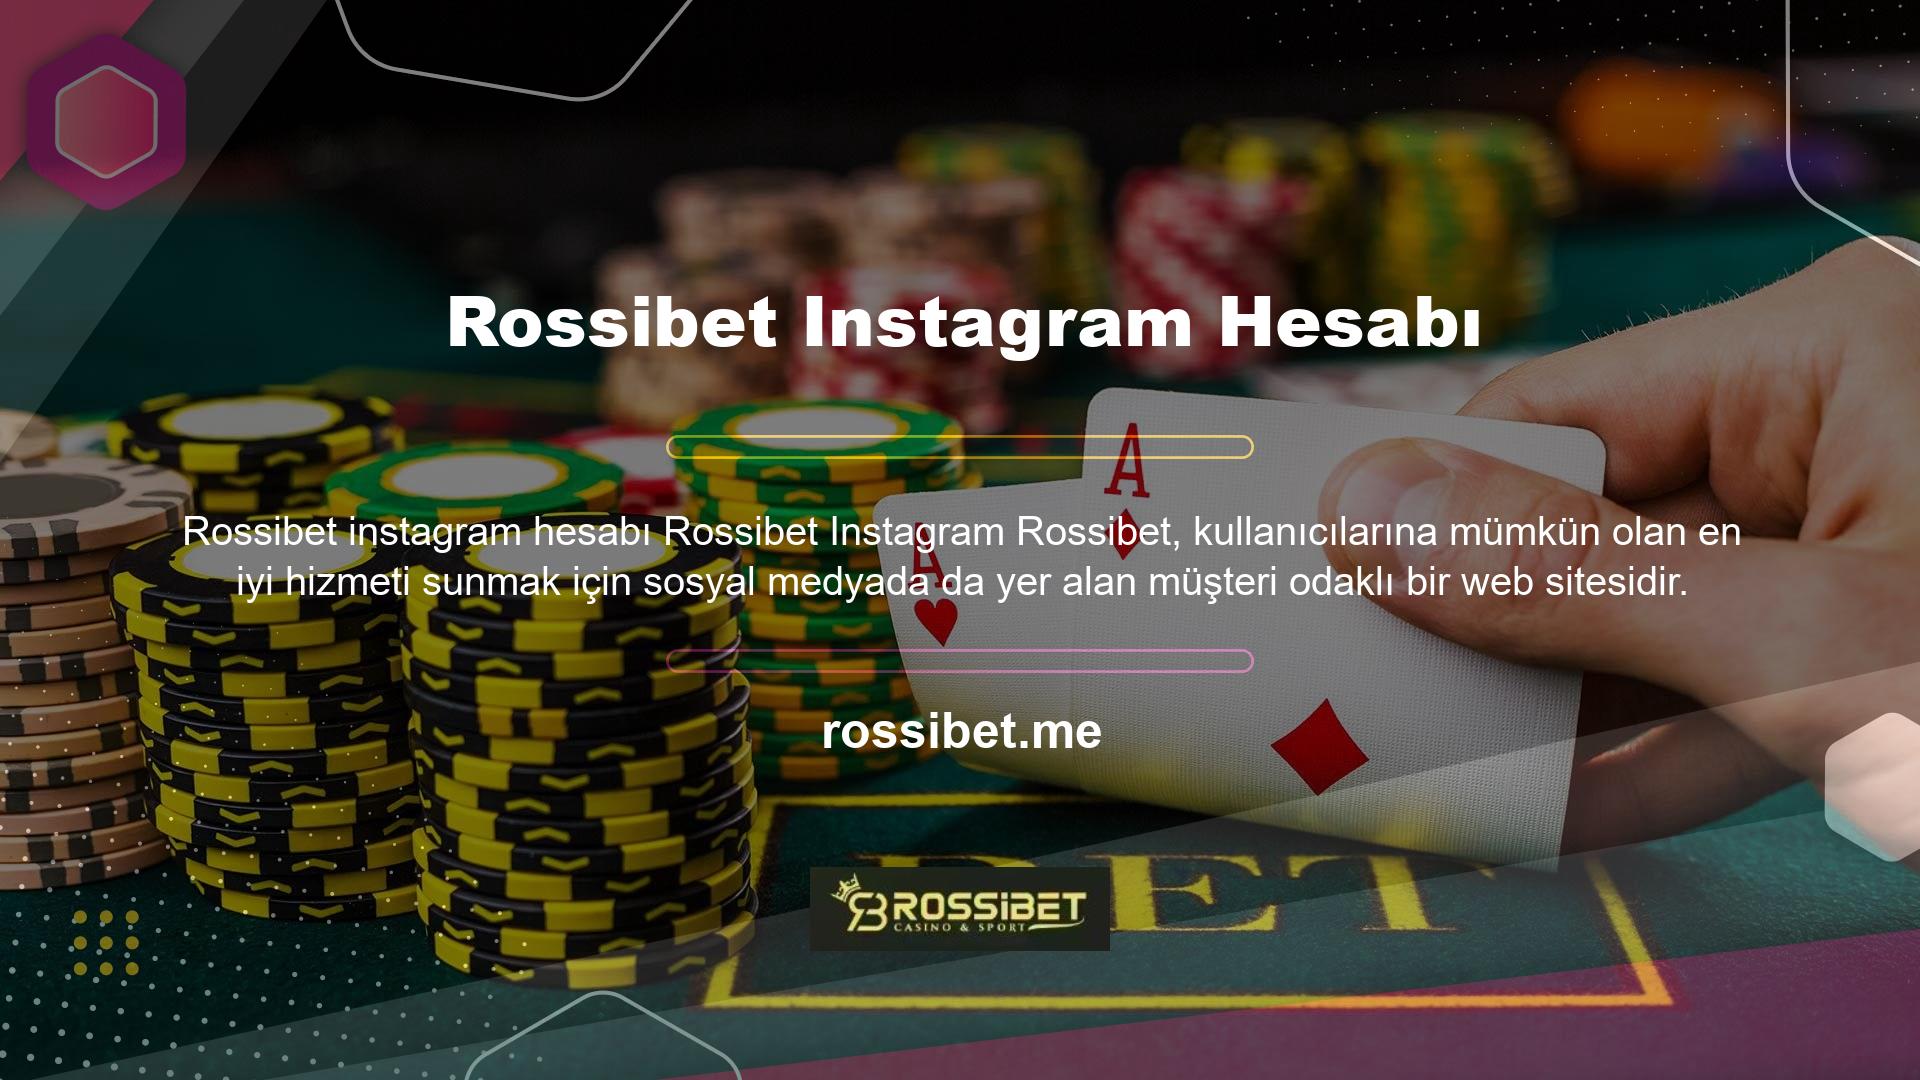 Büyük emellerle oyun dünyasına giriş yapan ve oyunculara hizmet vermeye başlayan site, kısa sürede çıkış noktasını bulmuş ve hatta Rossibet Twitter hesabını oluşturmuştur